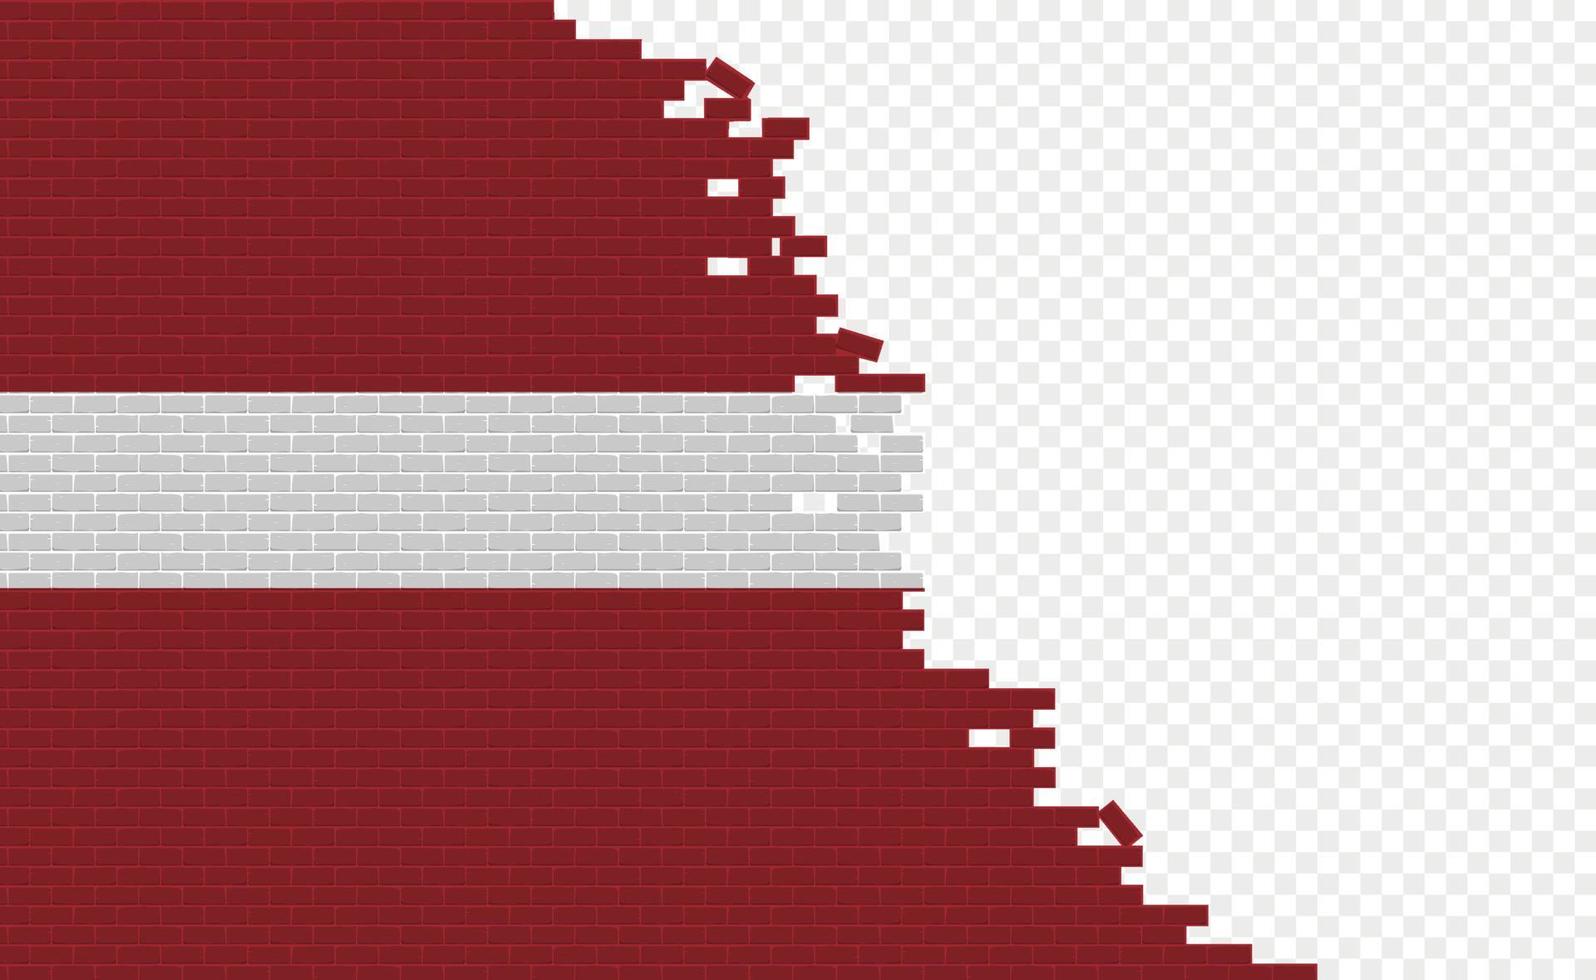 drapeau de la lettonie sur le mur de briques cassées. champ de drapeau vide d'un autre pays. comparaison de pays. édition facile et vecteur en groupes.